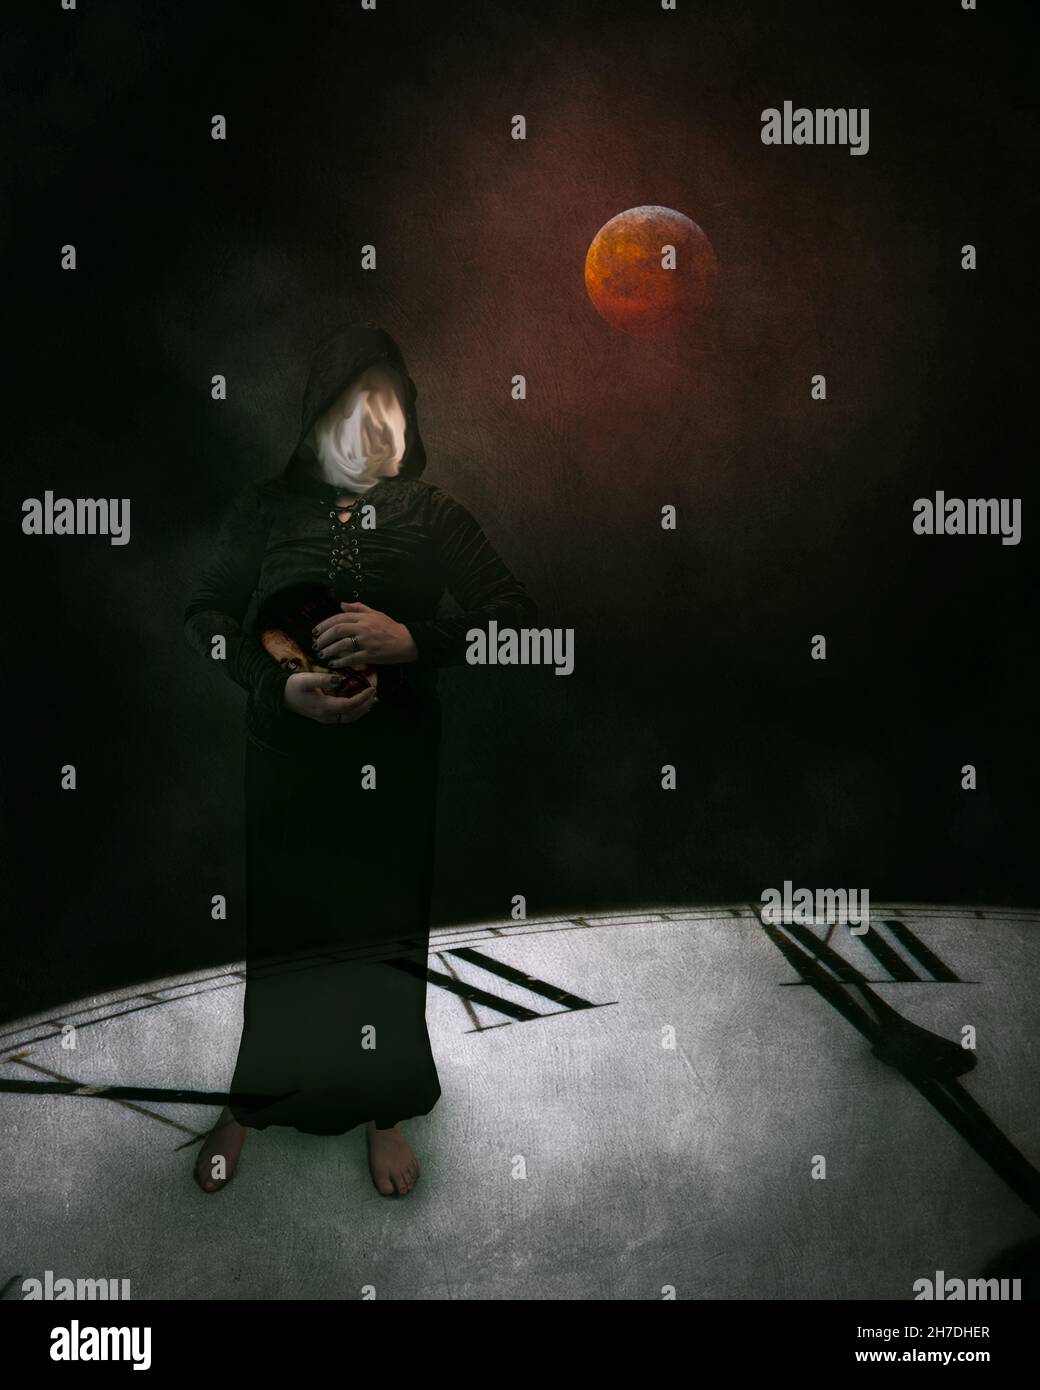 due minuti fino a mezzanotte - un composito fotografico artistico di una figura fantasma si trovava su un quadrante dell'orologio mentre galleggiava nello spazio con una luna rossa dietro. Foto Stock